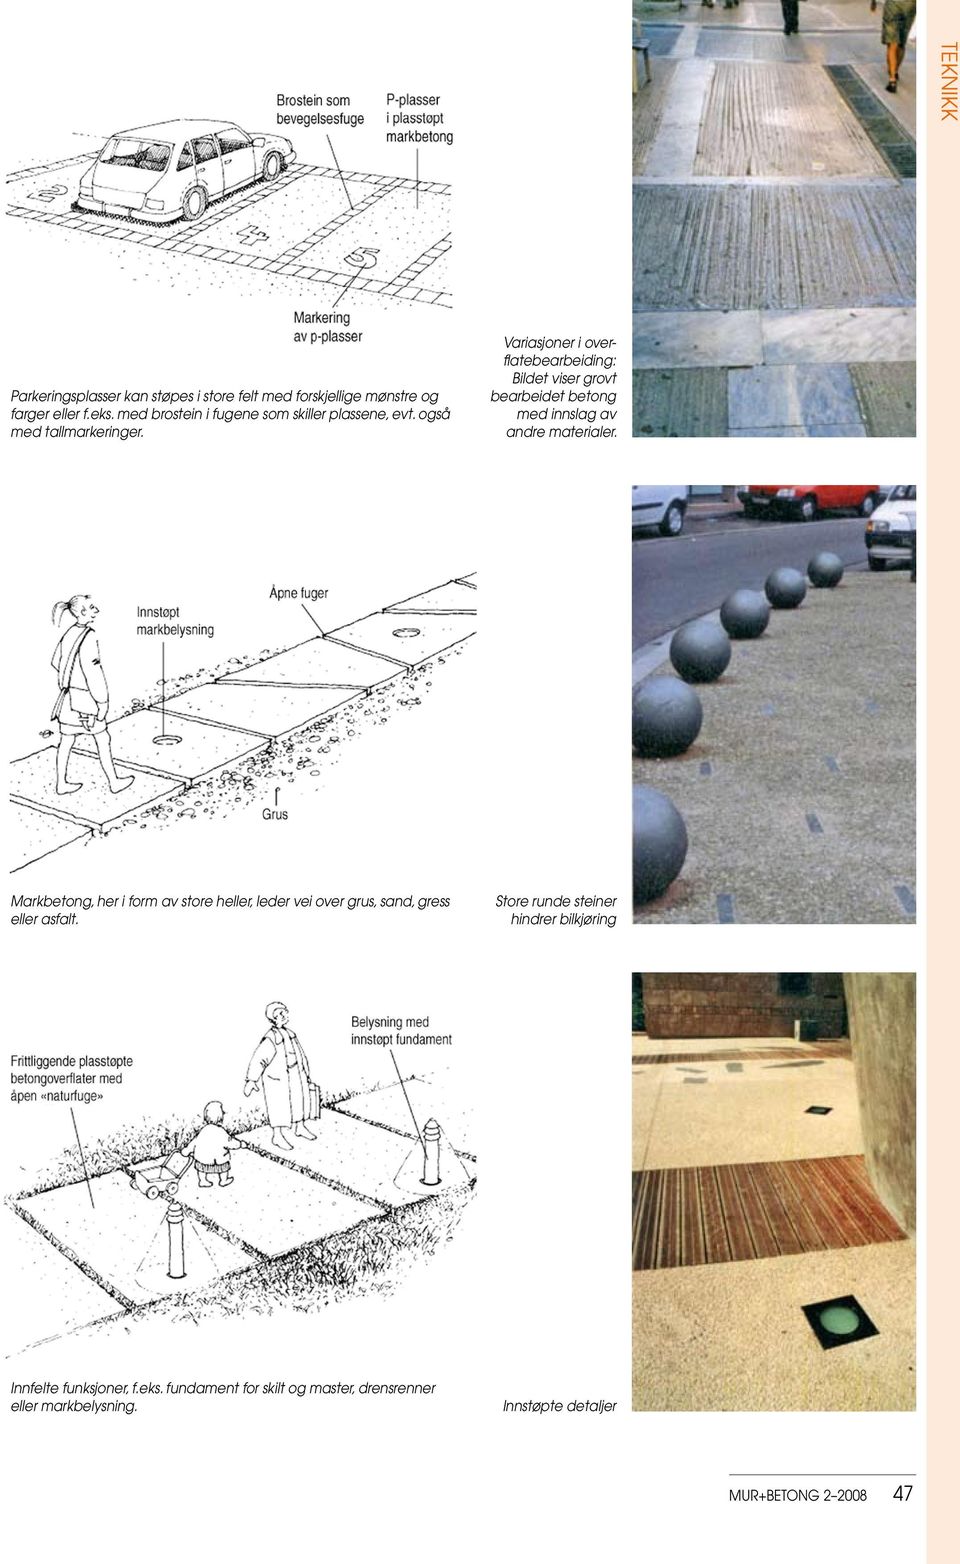 Variasjoner i overflatebearbeiding: Bildet viser grovt bearbeidet betong med innslag av andre materialer.